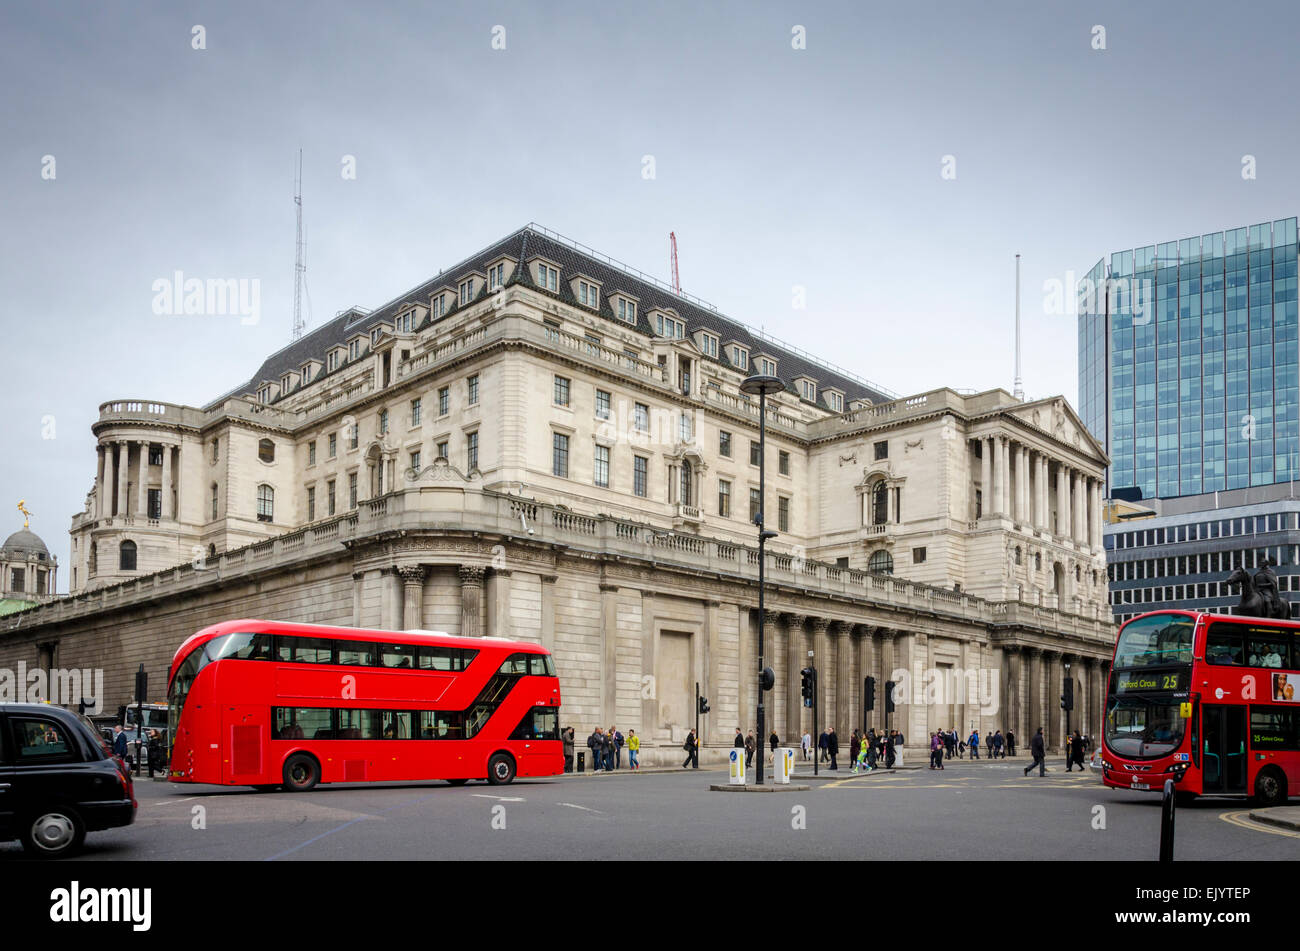 Red London bus di fronte alla Bank of England edificio, Threadneedle Street, City of London, Regno Unito Foto Stock